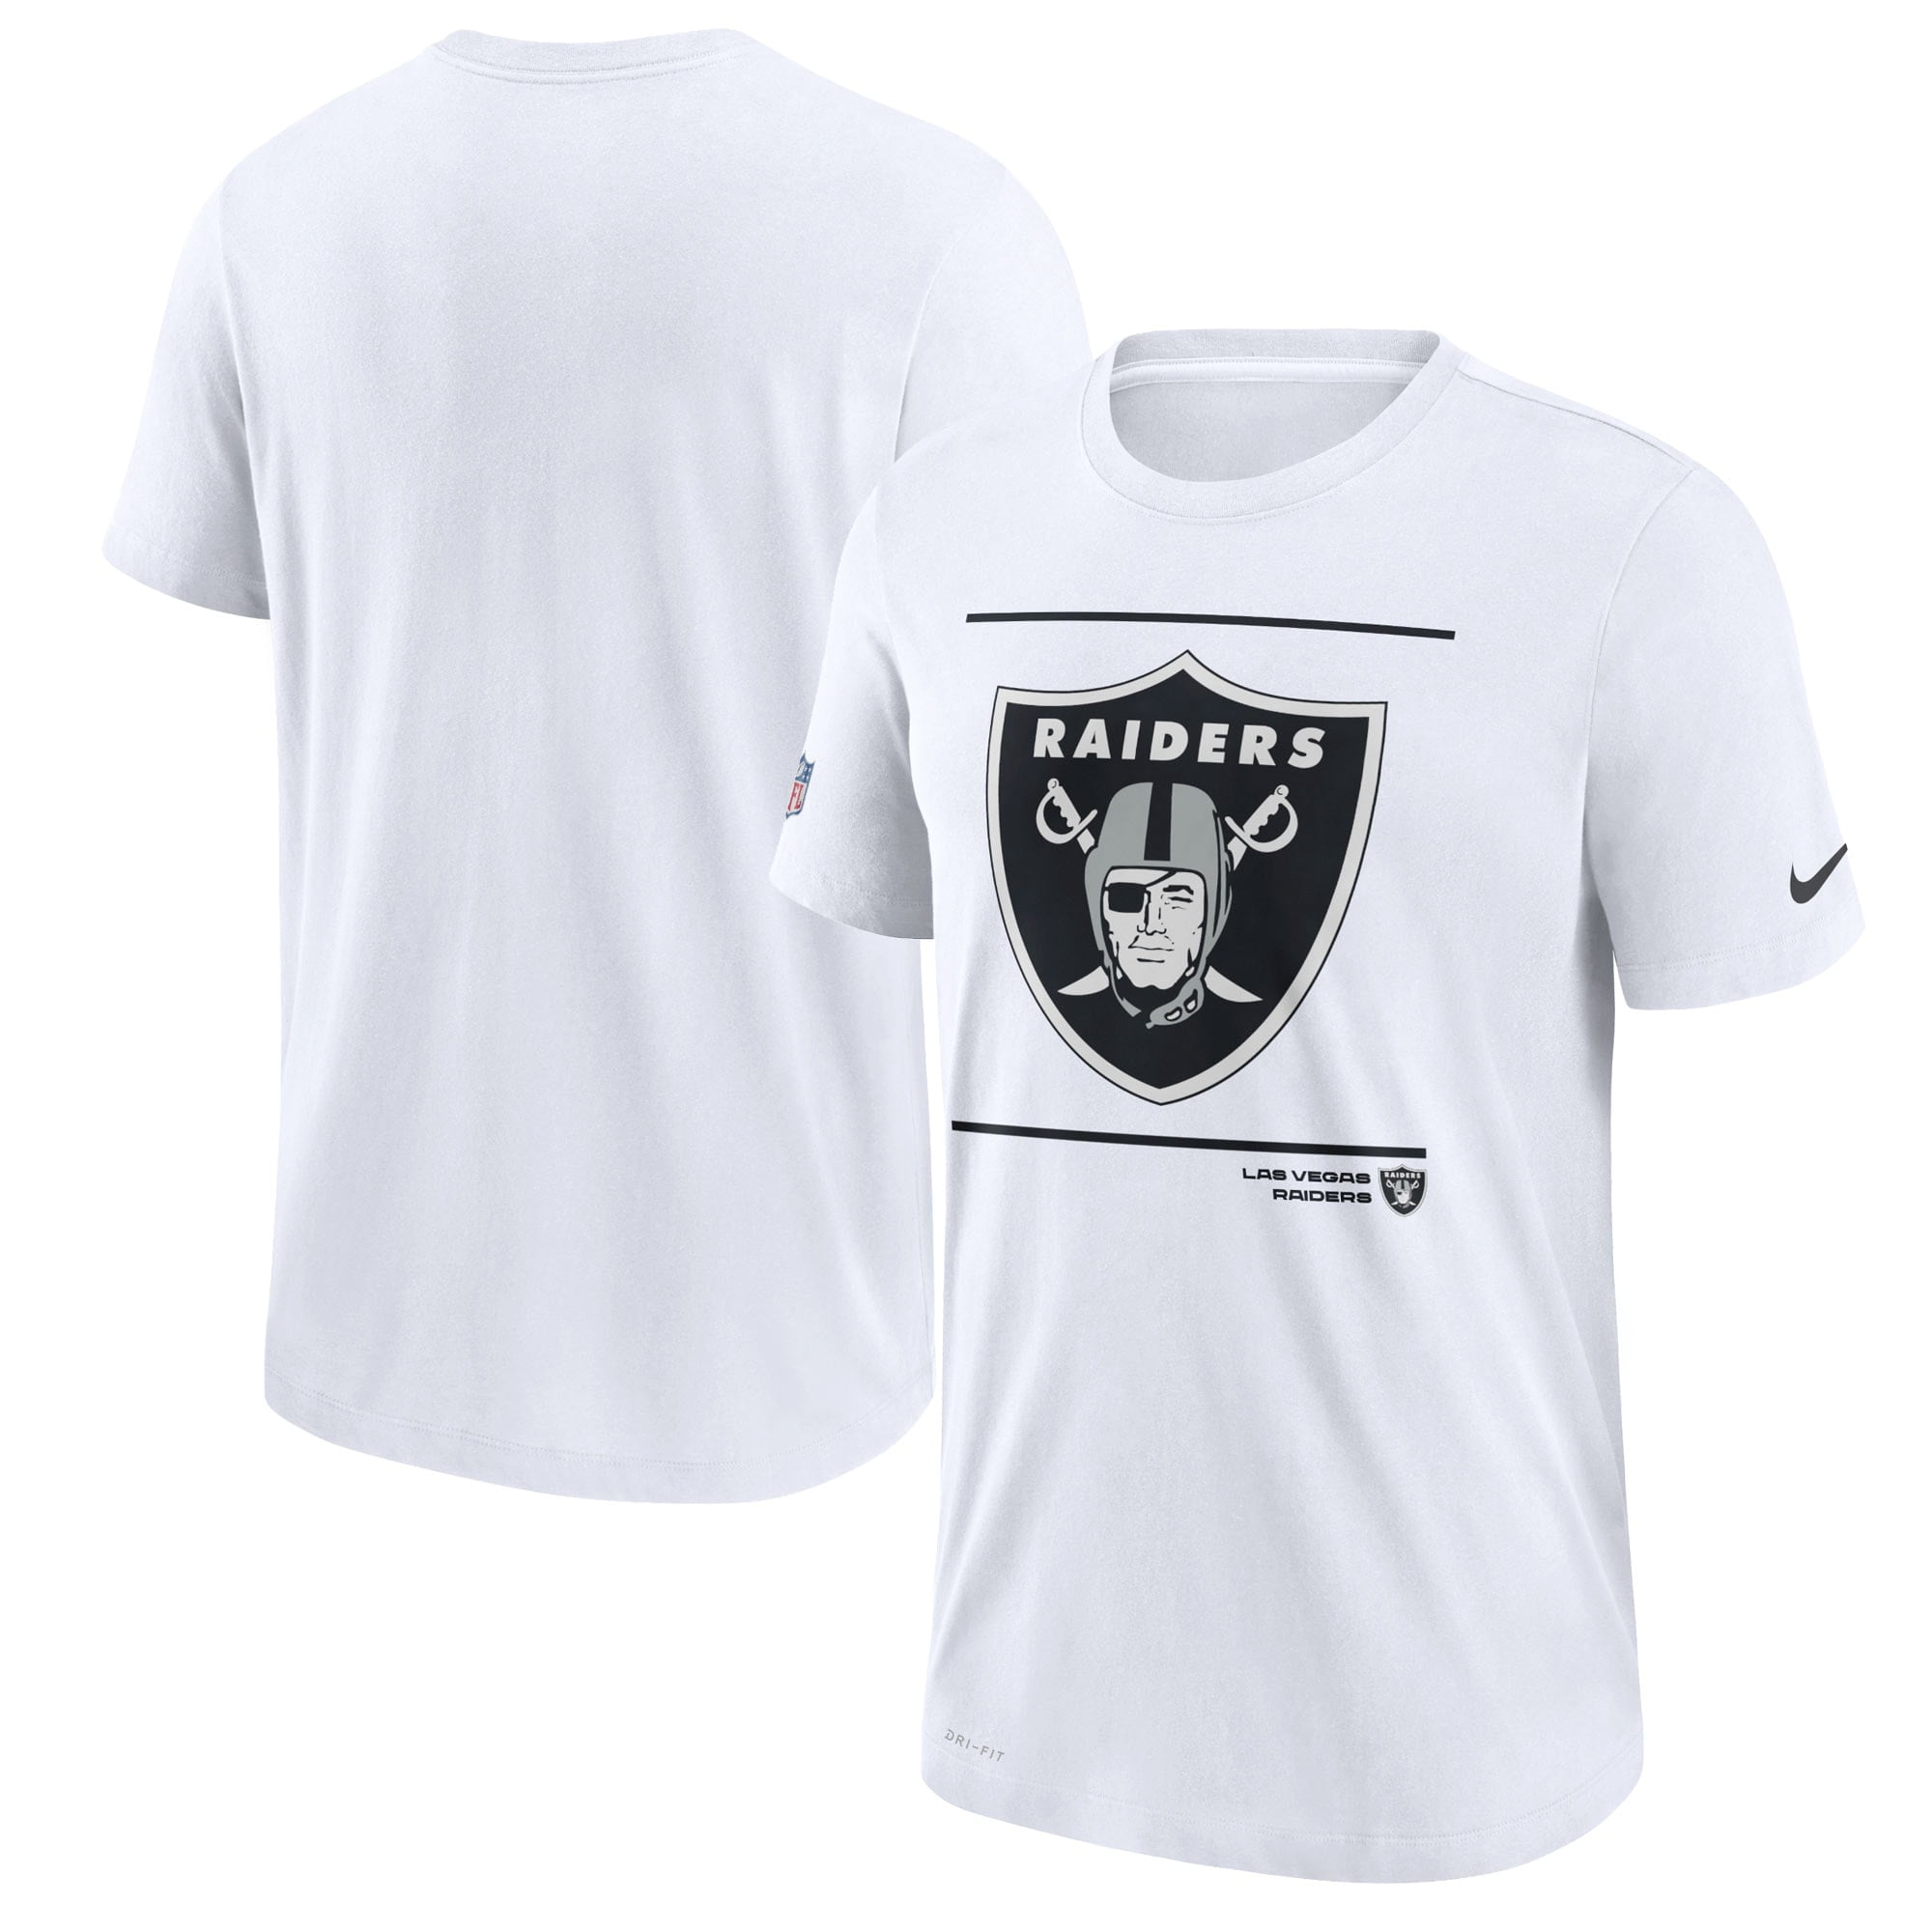 Raiders Football T-Shirt